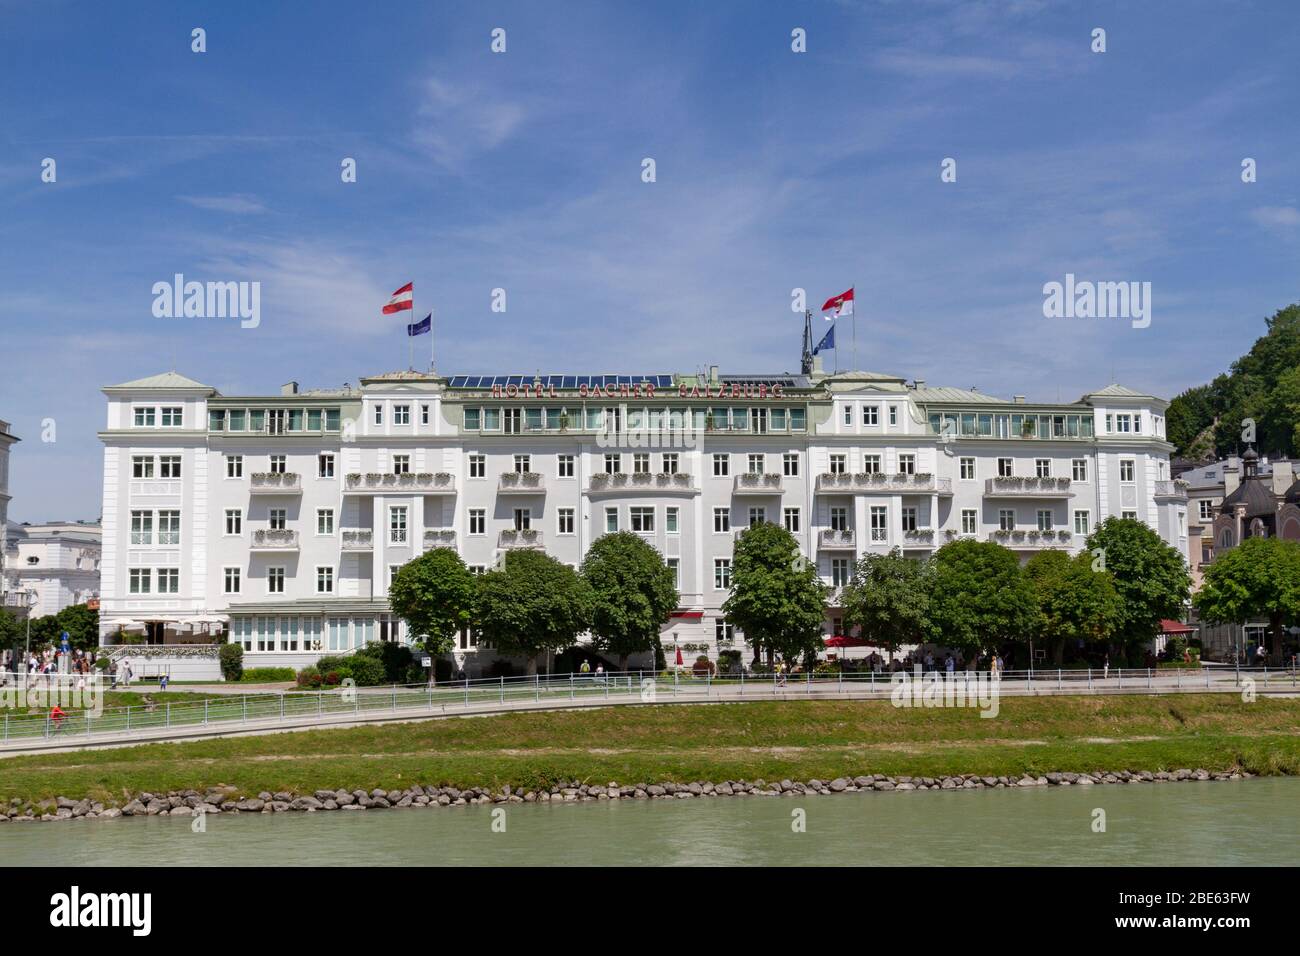 L'hôtel Sacher Salzburg, un hôtel de luxe cinq étoiles situé sur les interdictions de la rivière Salzach à Salzbourg, en Autriche. Banque D'Images